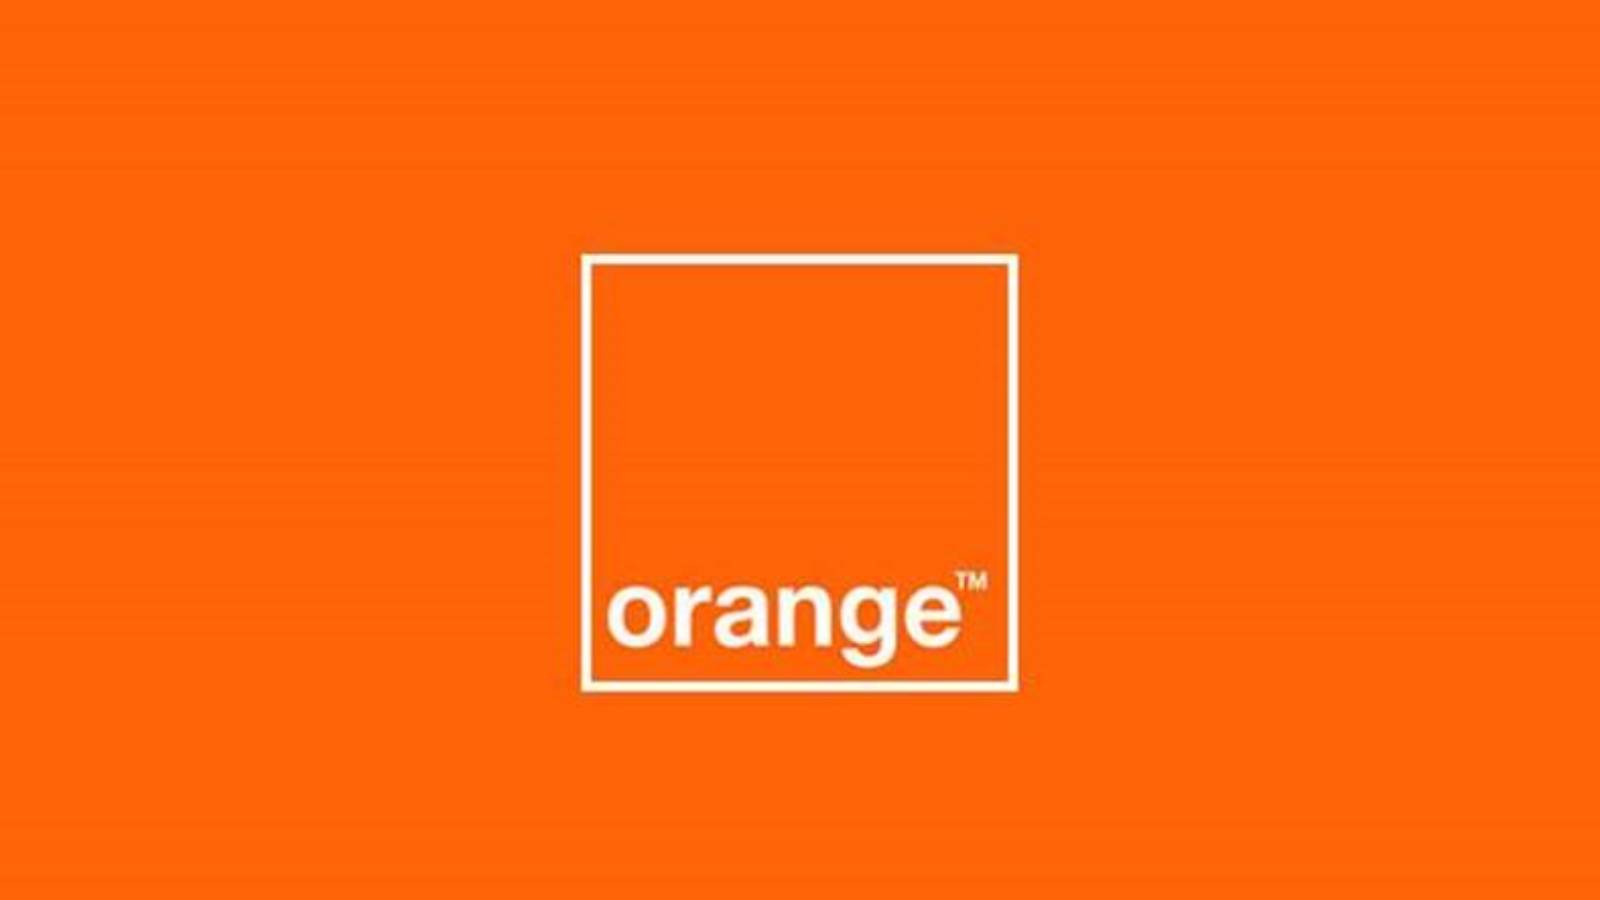 Oranje officiële maatregel LAST MINUTE GRATIS voor Roemeense klanten